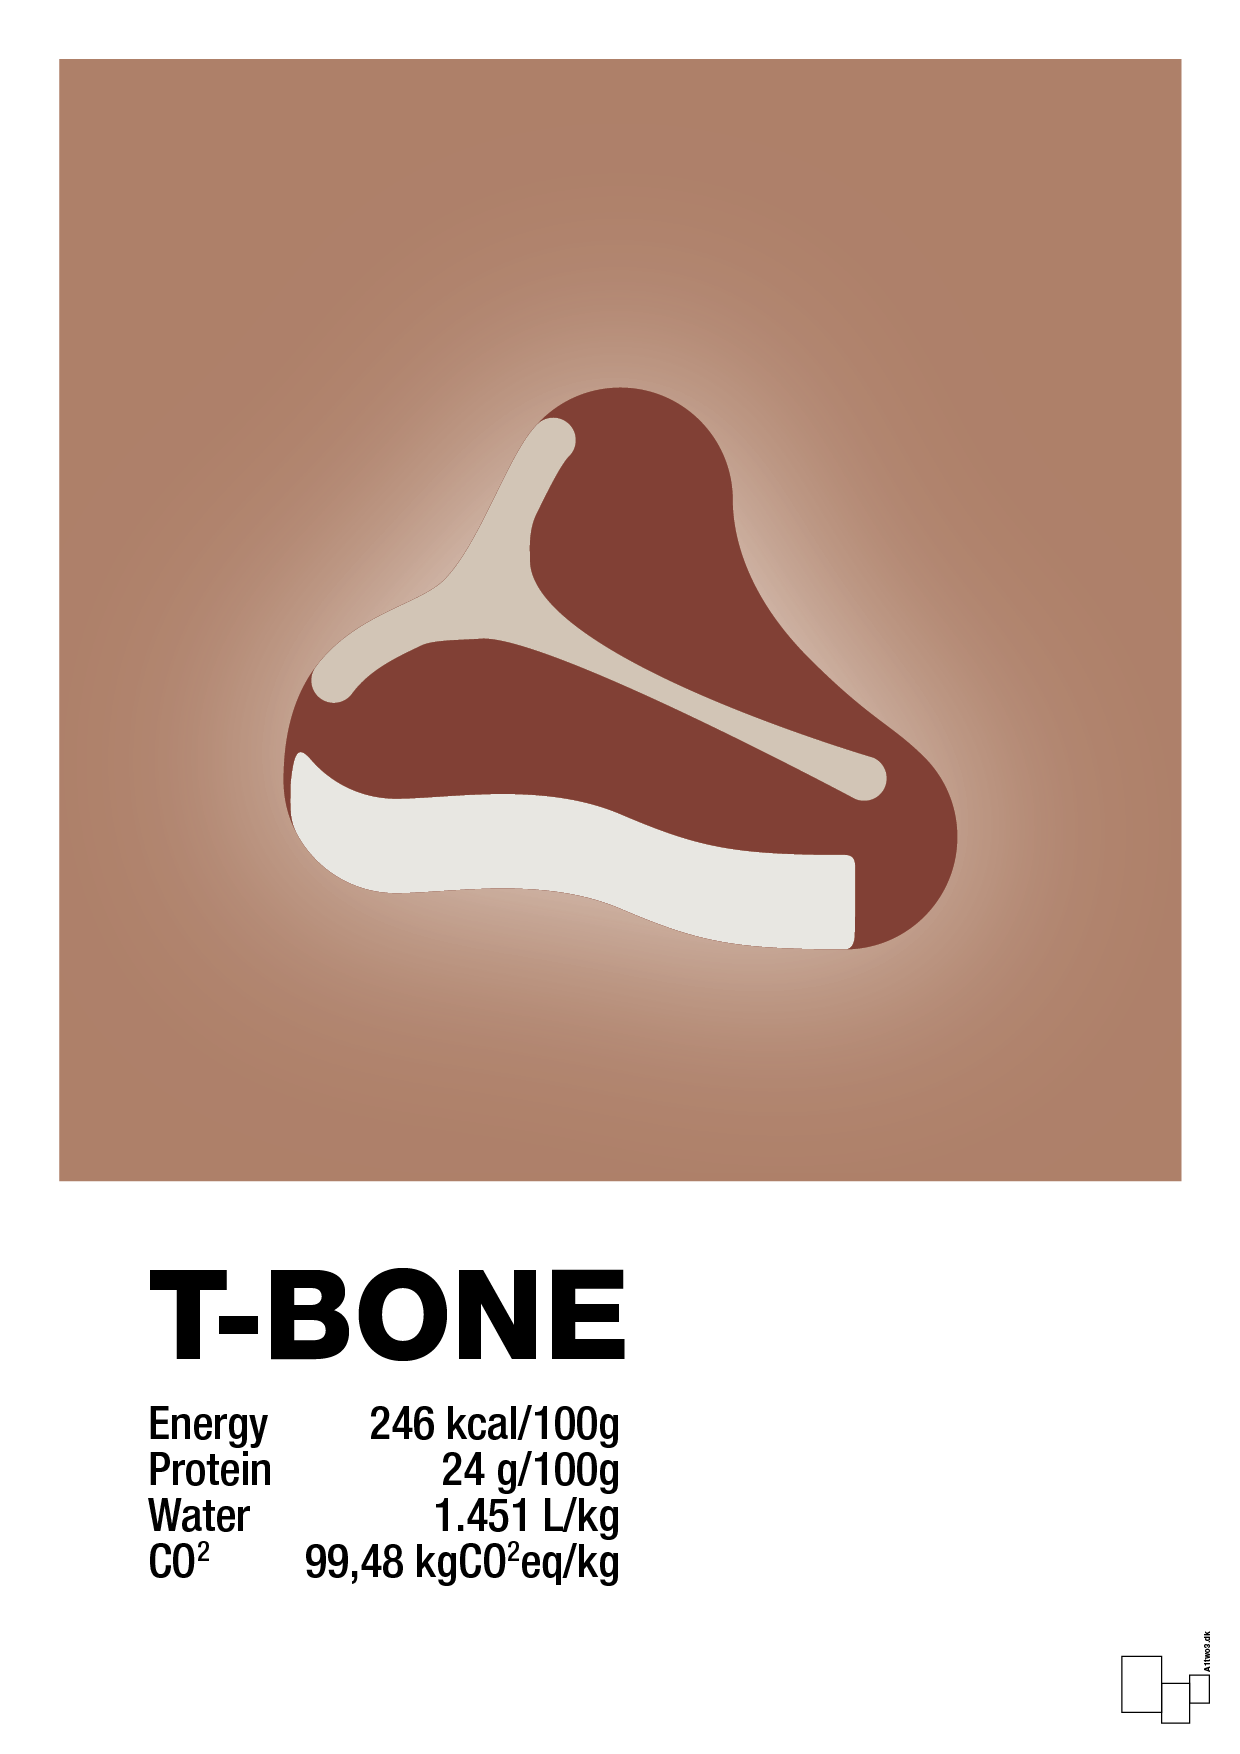 t-bone nutrition og miljø - Plakat med Mad & Drikke i Cider Spice